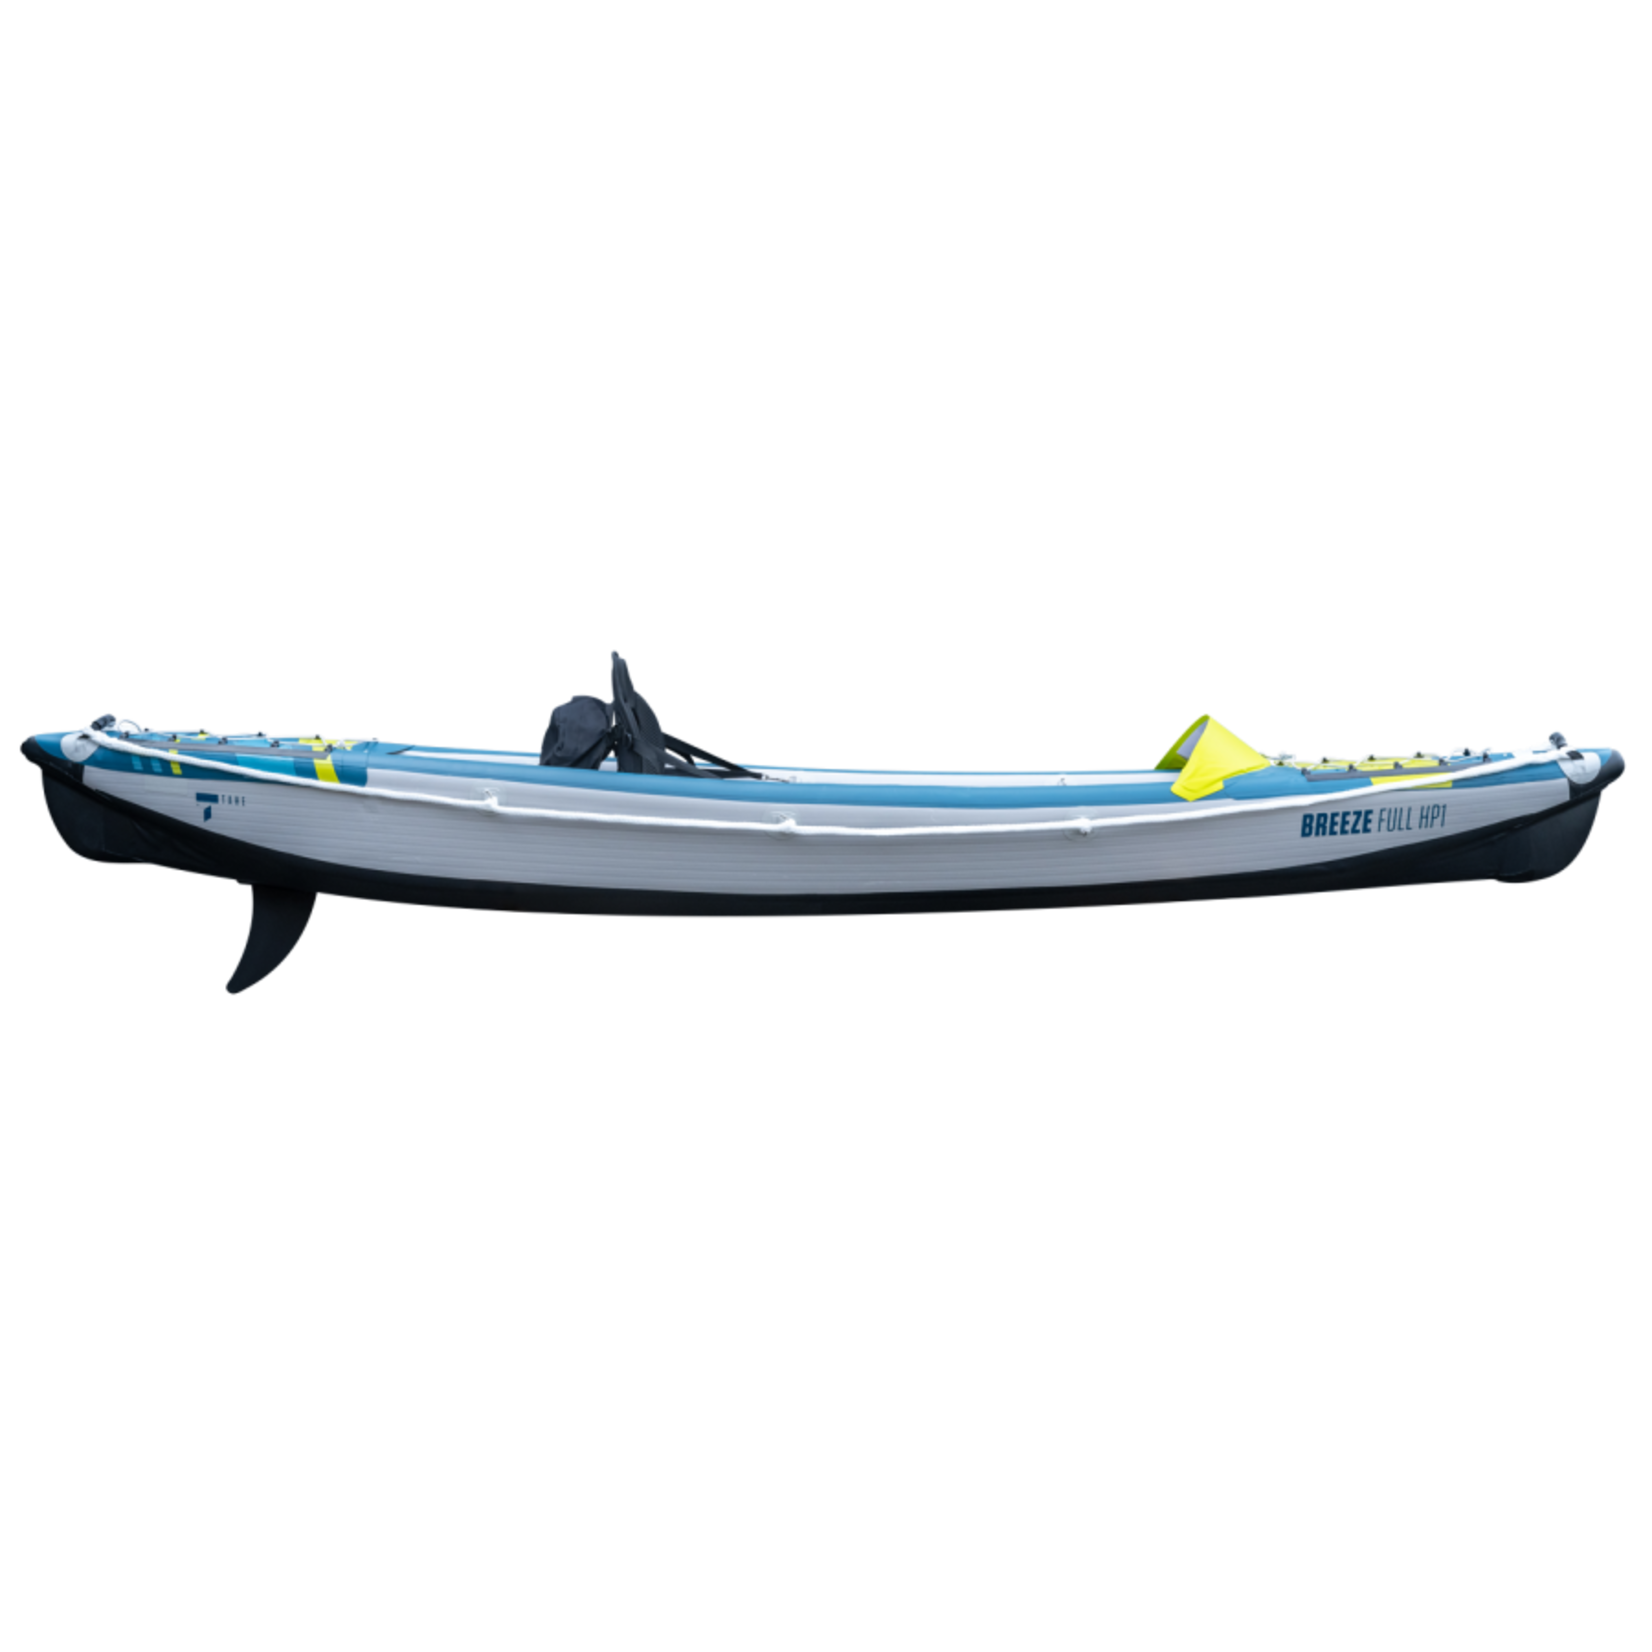 Tahe Outdoors Kayak Air Breeze Full HP1